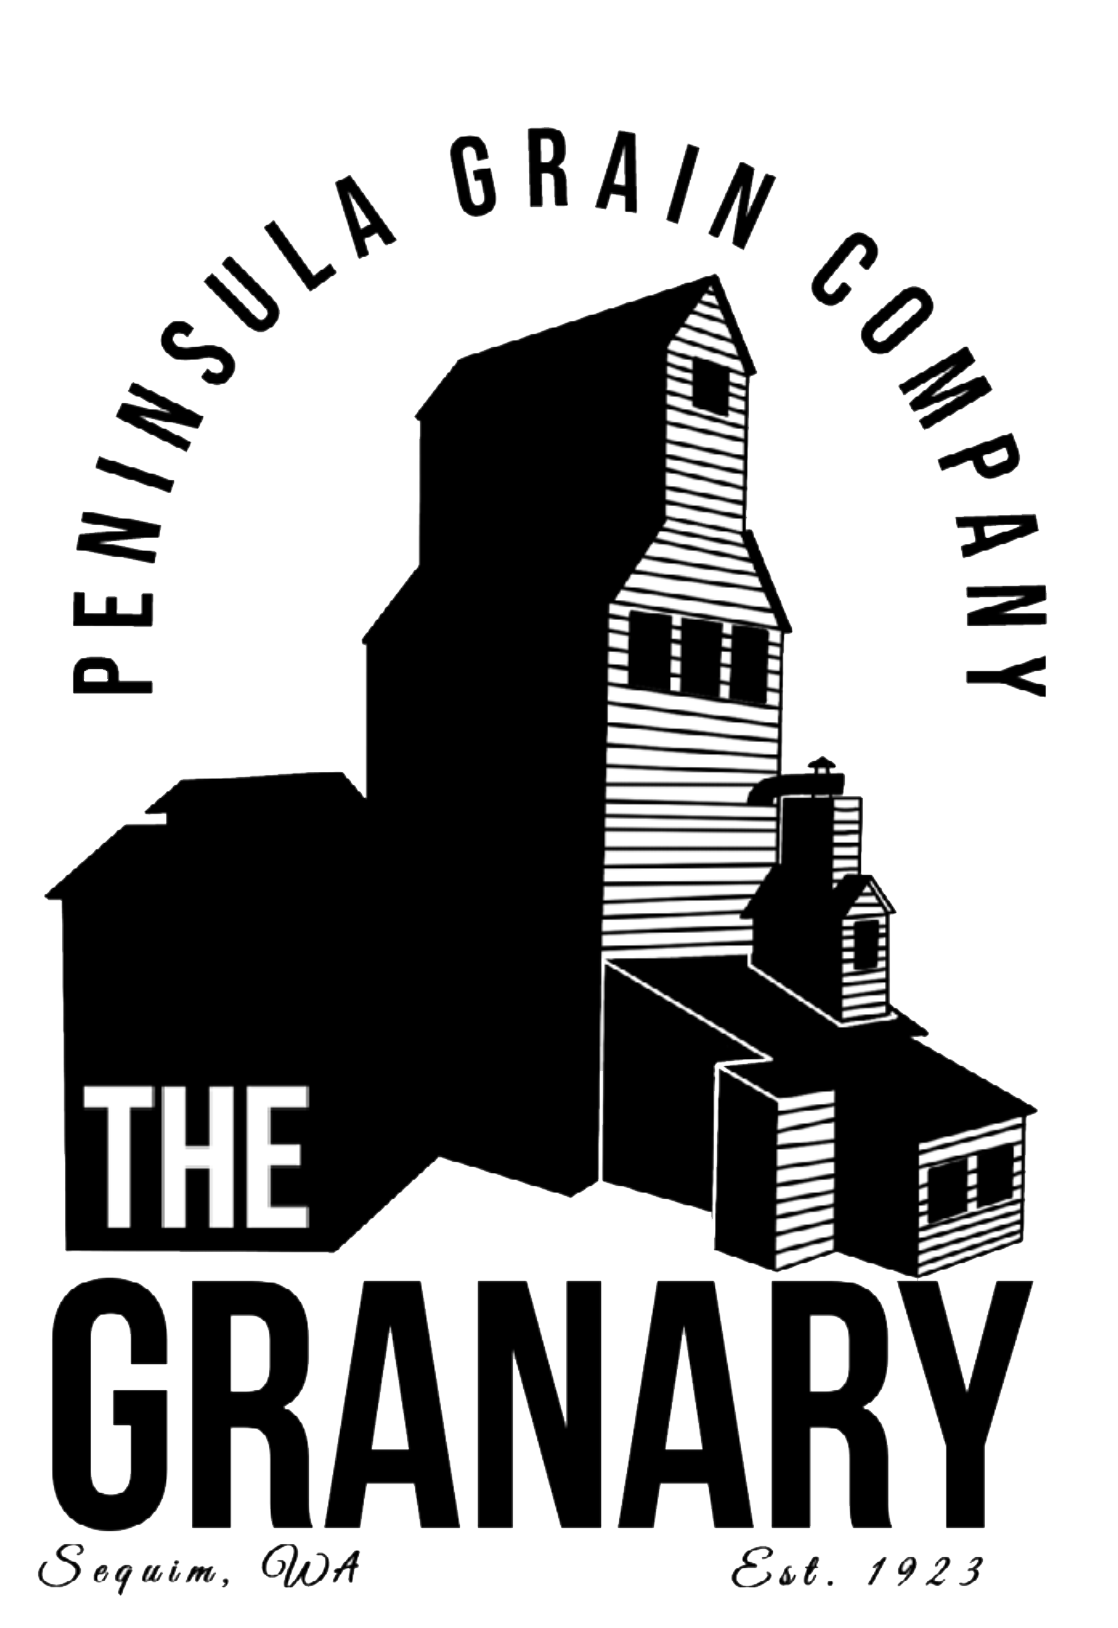 THE GRANARY